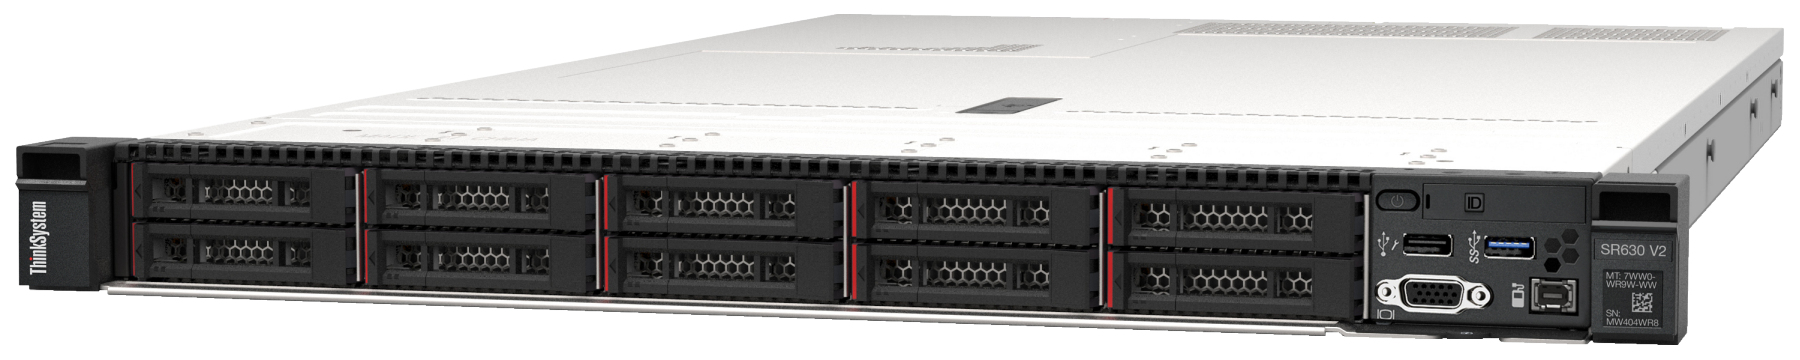 Сервер Lenovo ThinkSystem SR630 V2 (7Z71A062EA). Фиксированная комплектация сервера